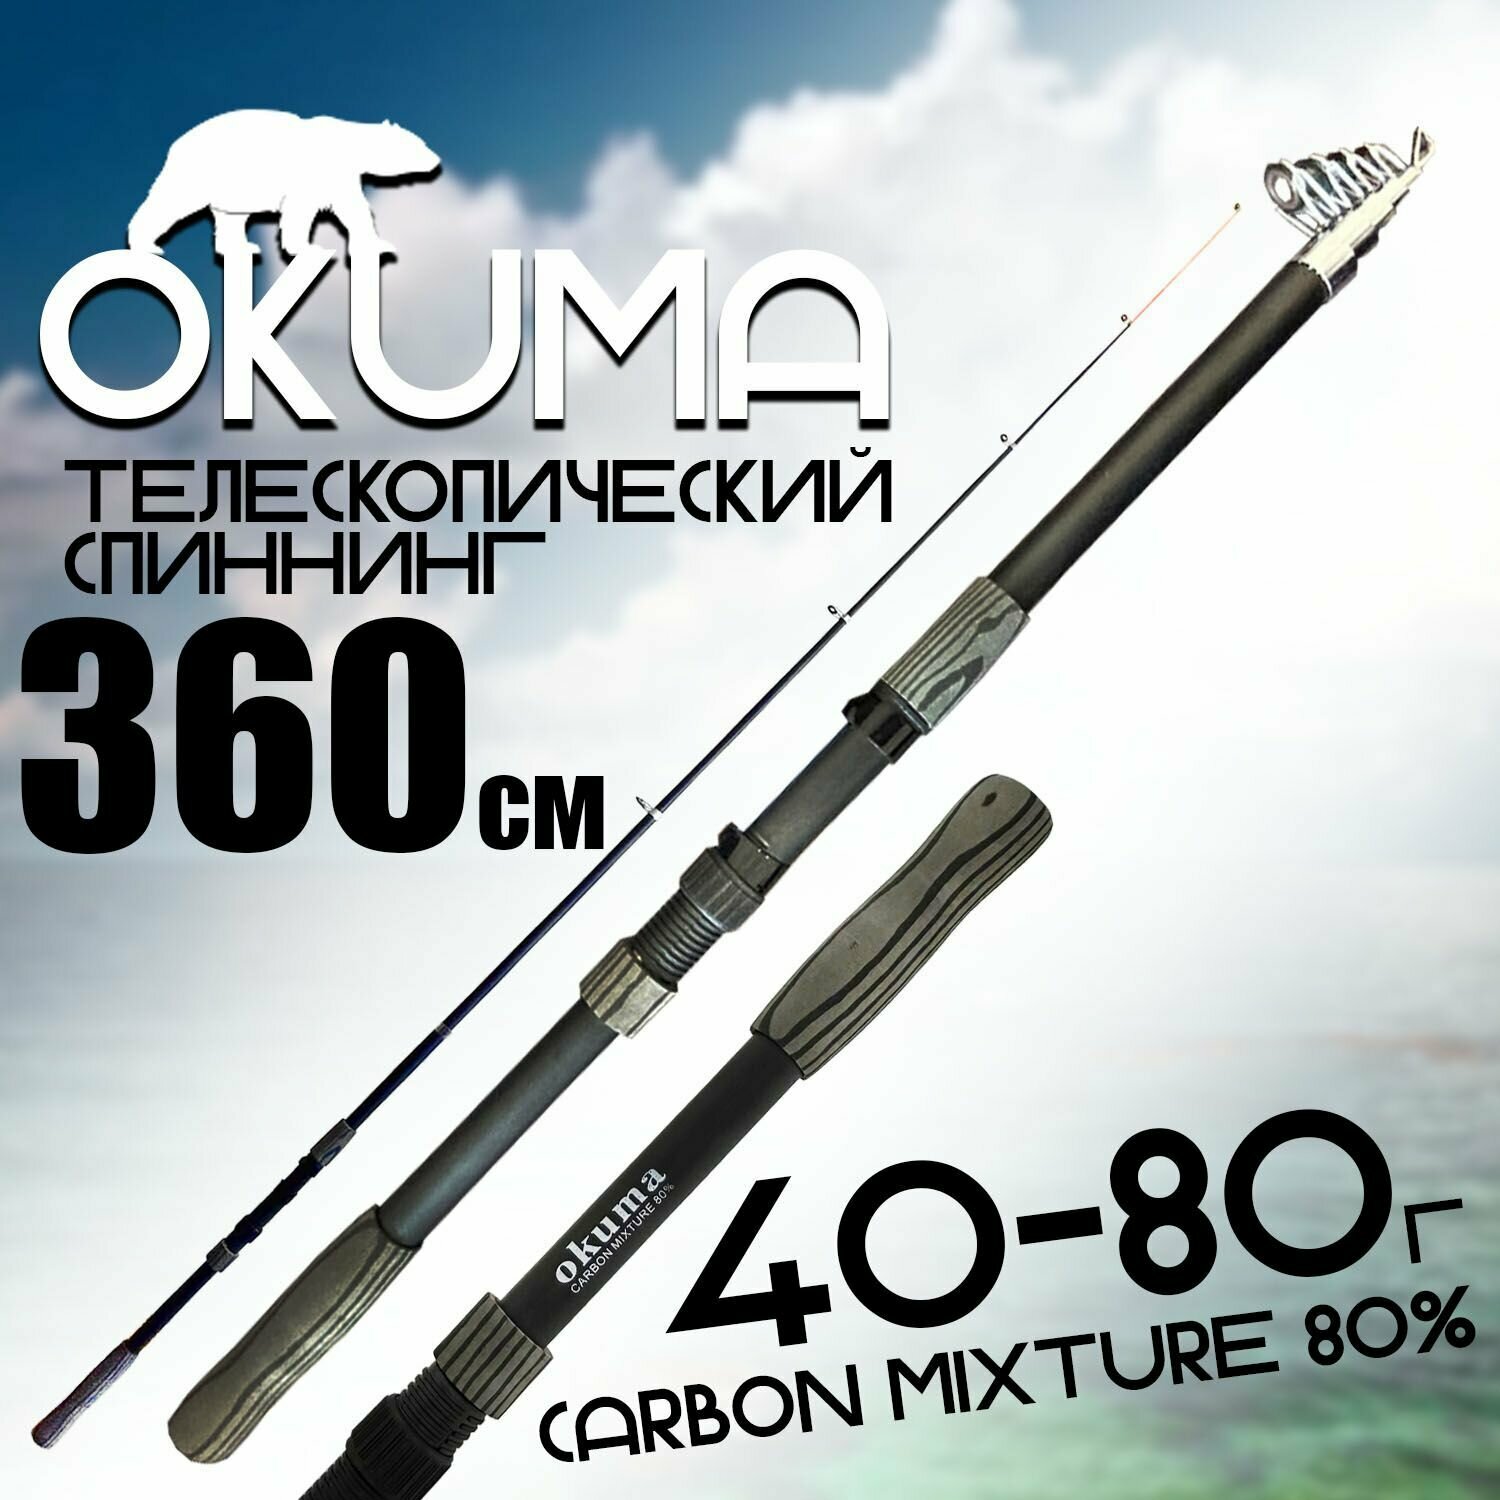 Спиннинг для рыбалки "OKUMA" 360 см. тест: 40-80 г. Средне-быстрый строй; Карбоновый